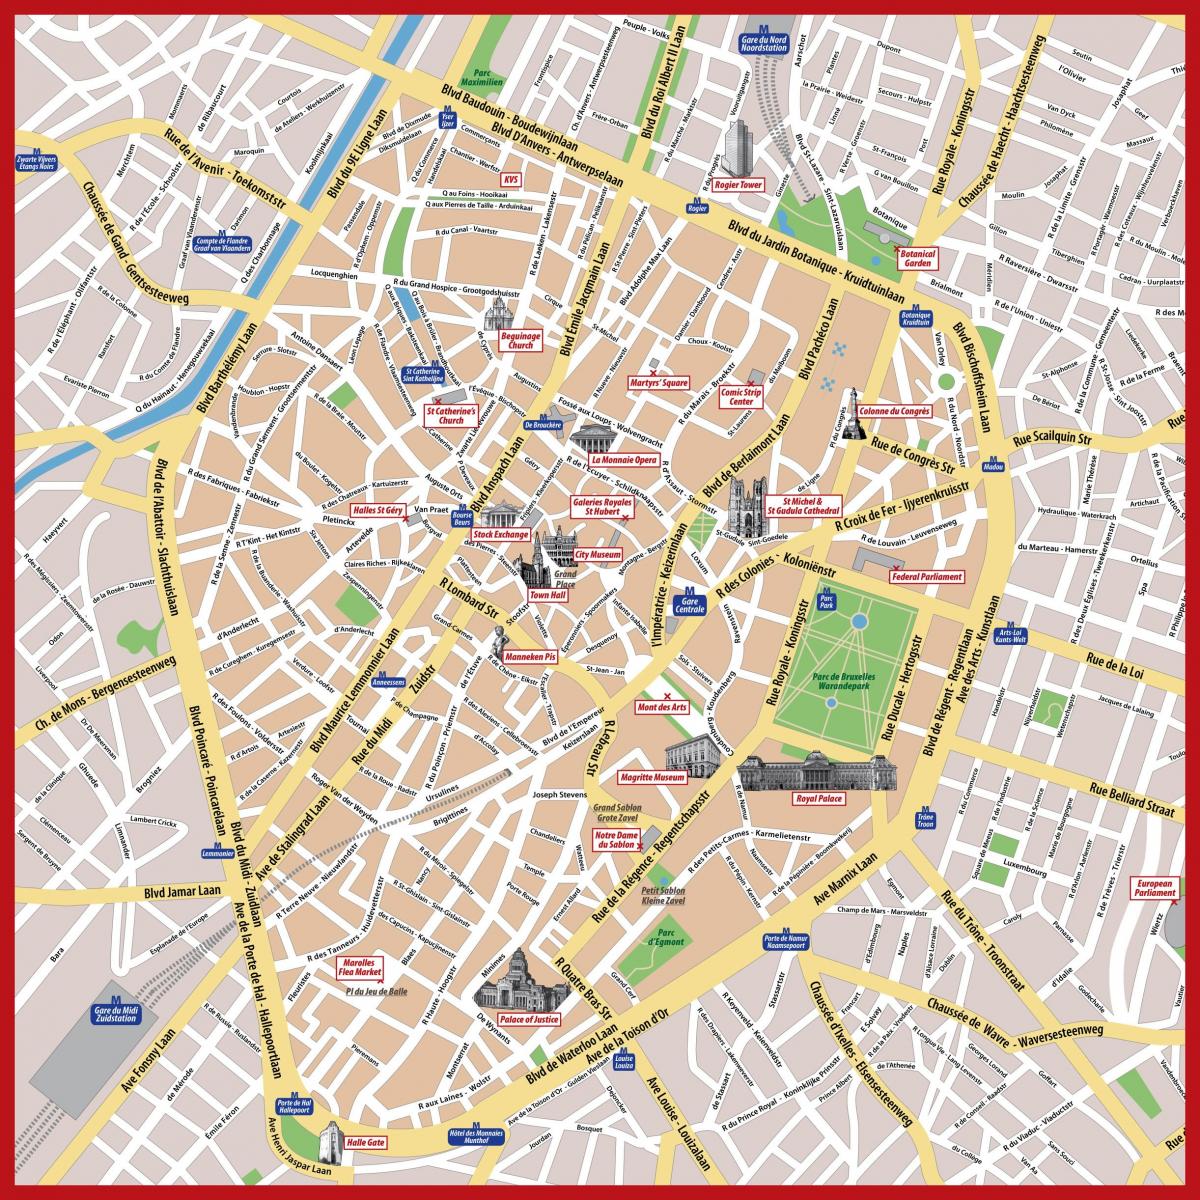 głównej ulicy w Brukseli mapie